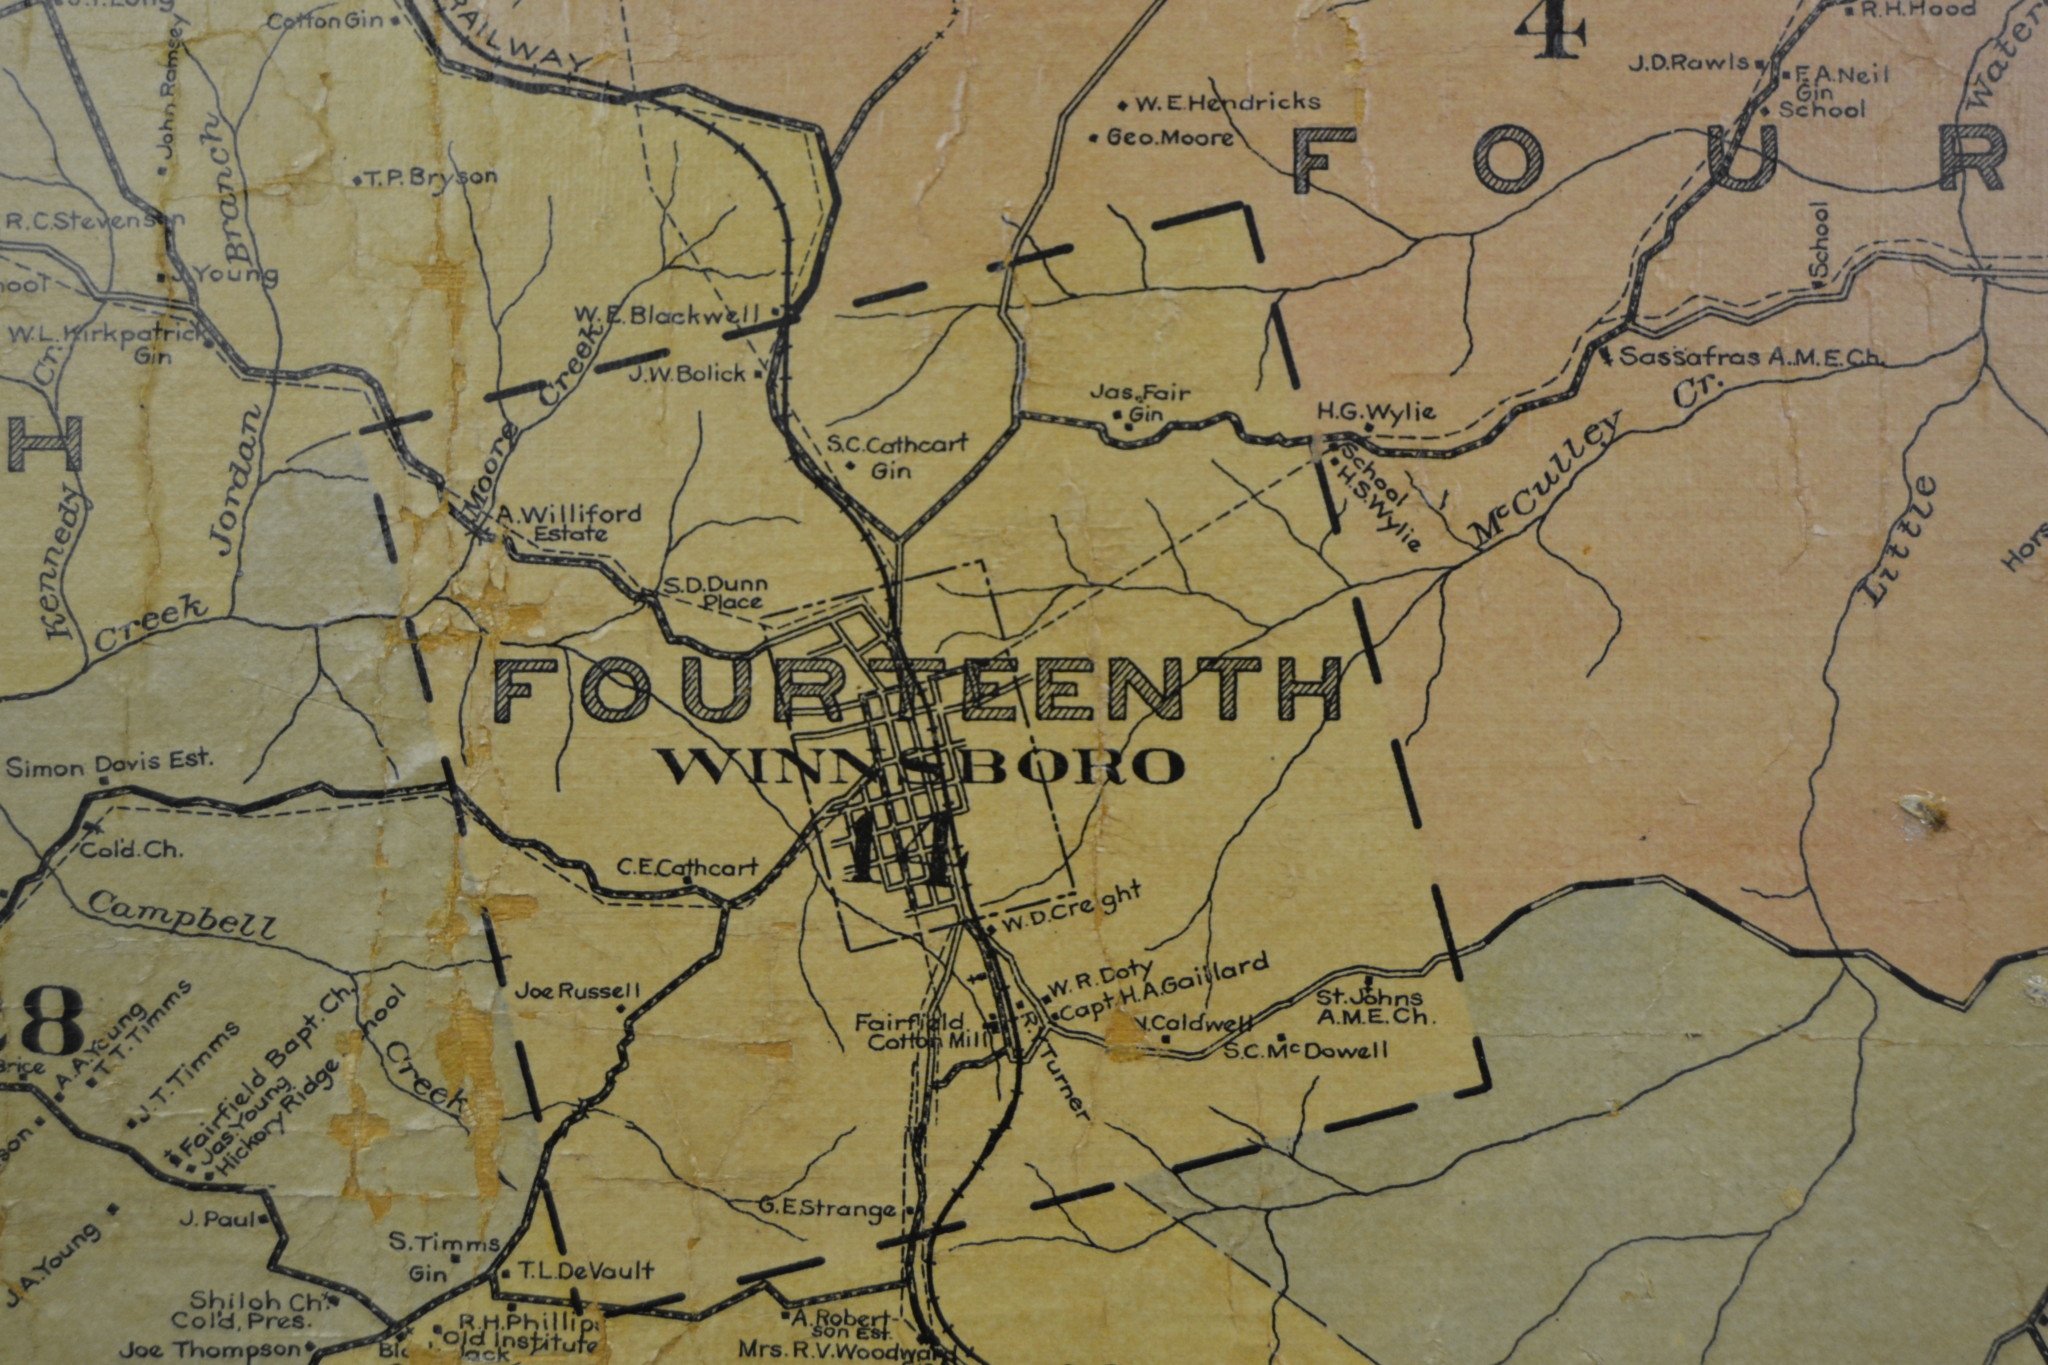 Elkins's Map of Fairfield County - Winnsboro Section